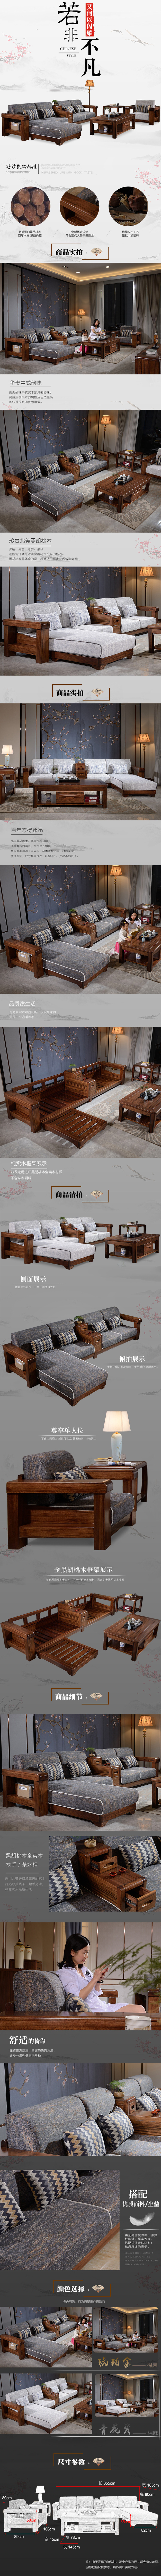 淘宝美工阿雅中式华贵韵味舒适惬意实木优质沙发作品